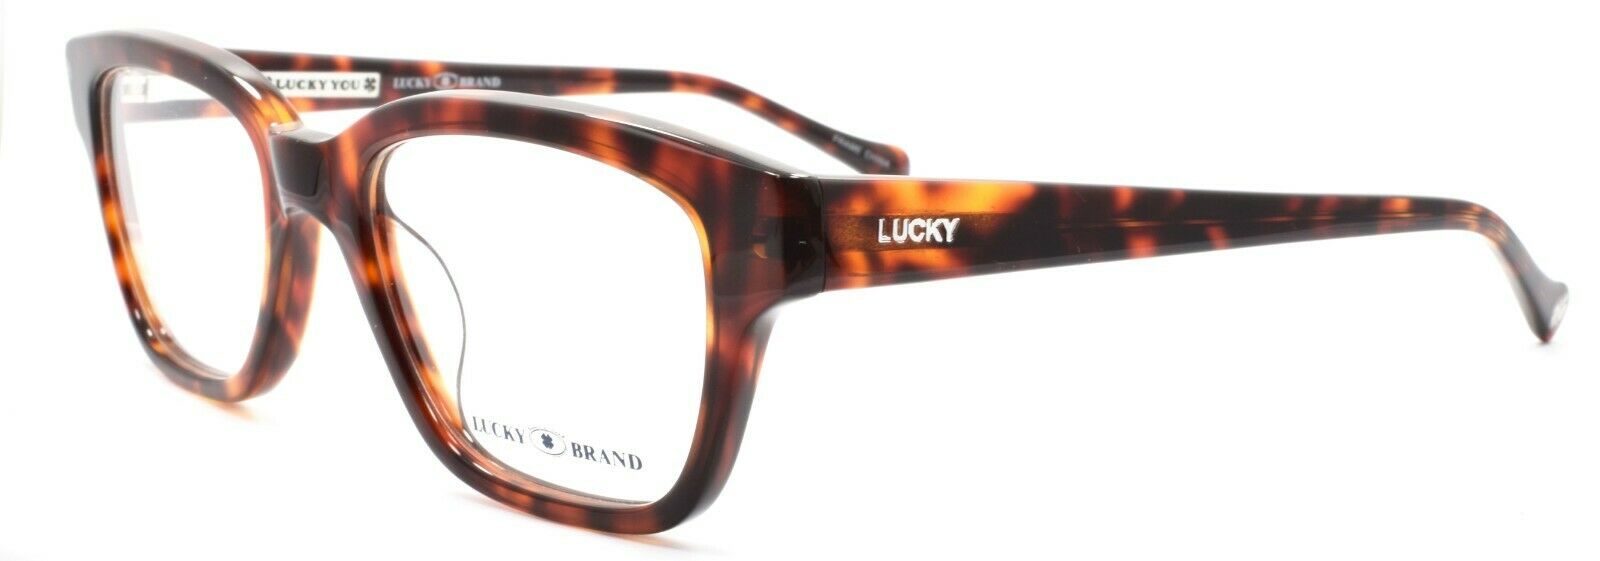 1-LUCKY BRAND Venturer UF Men's Eyeglasses Frames 50-19-145 Tortoise + CASE-751286249309-IKSpecs